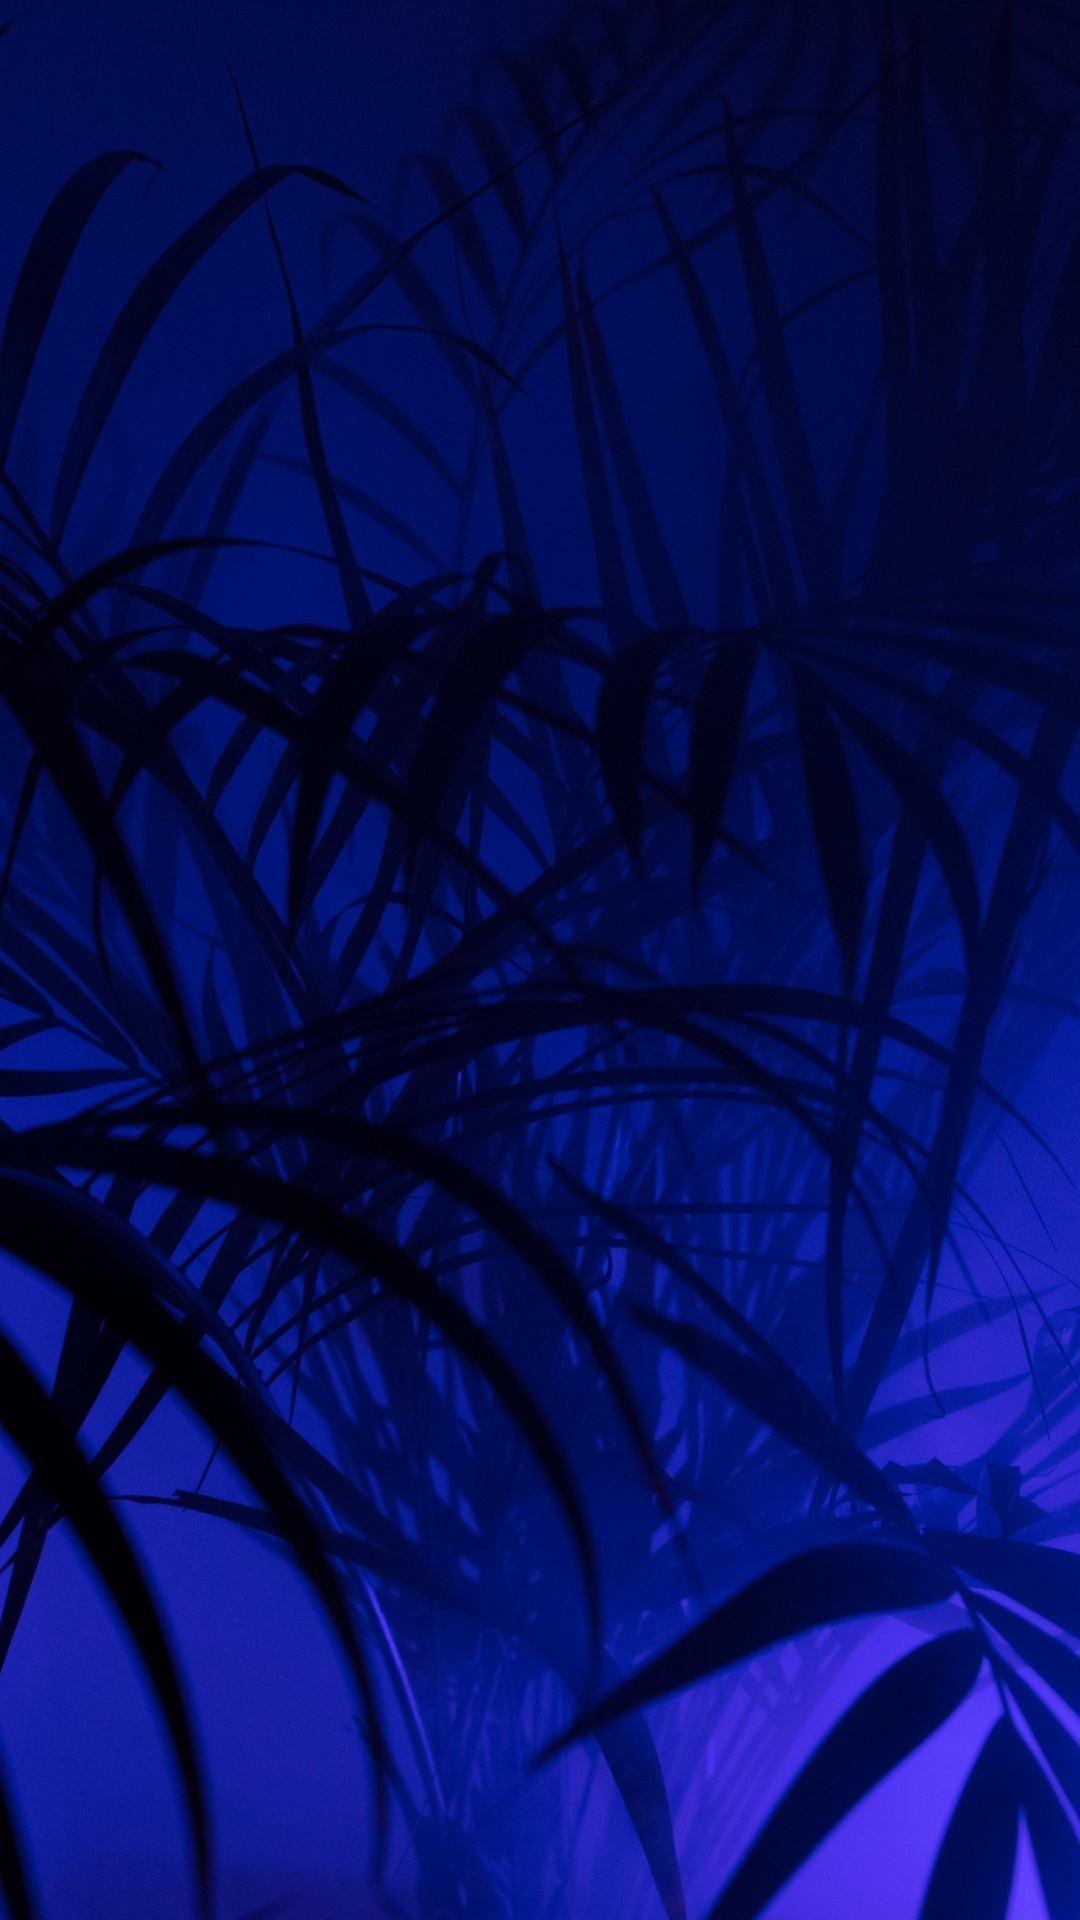 Grüne Pflanze in Blauem Hintergrund. Wallpaper in 1080x1920 Resolution